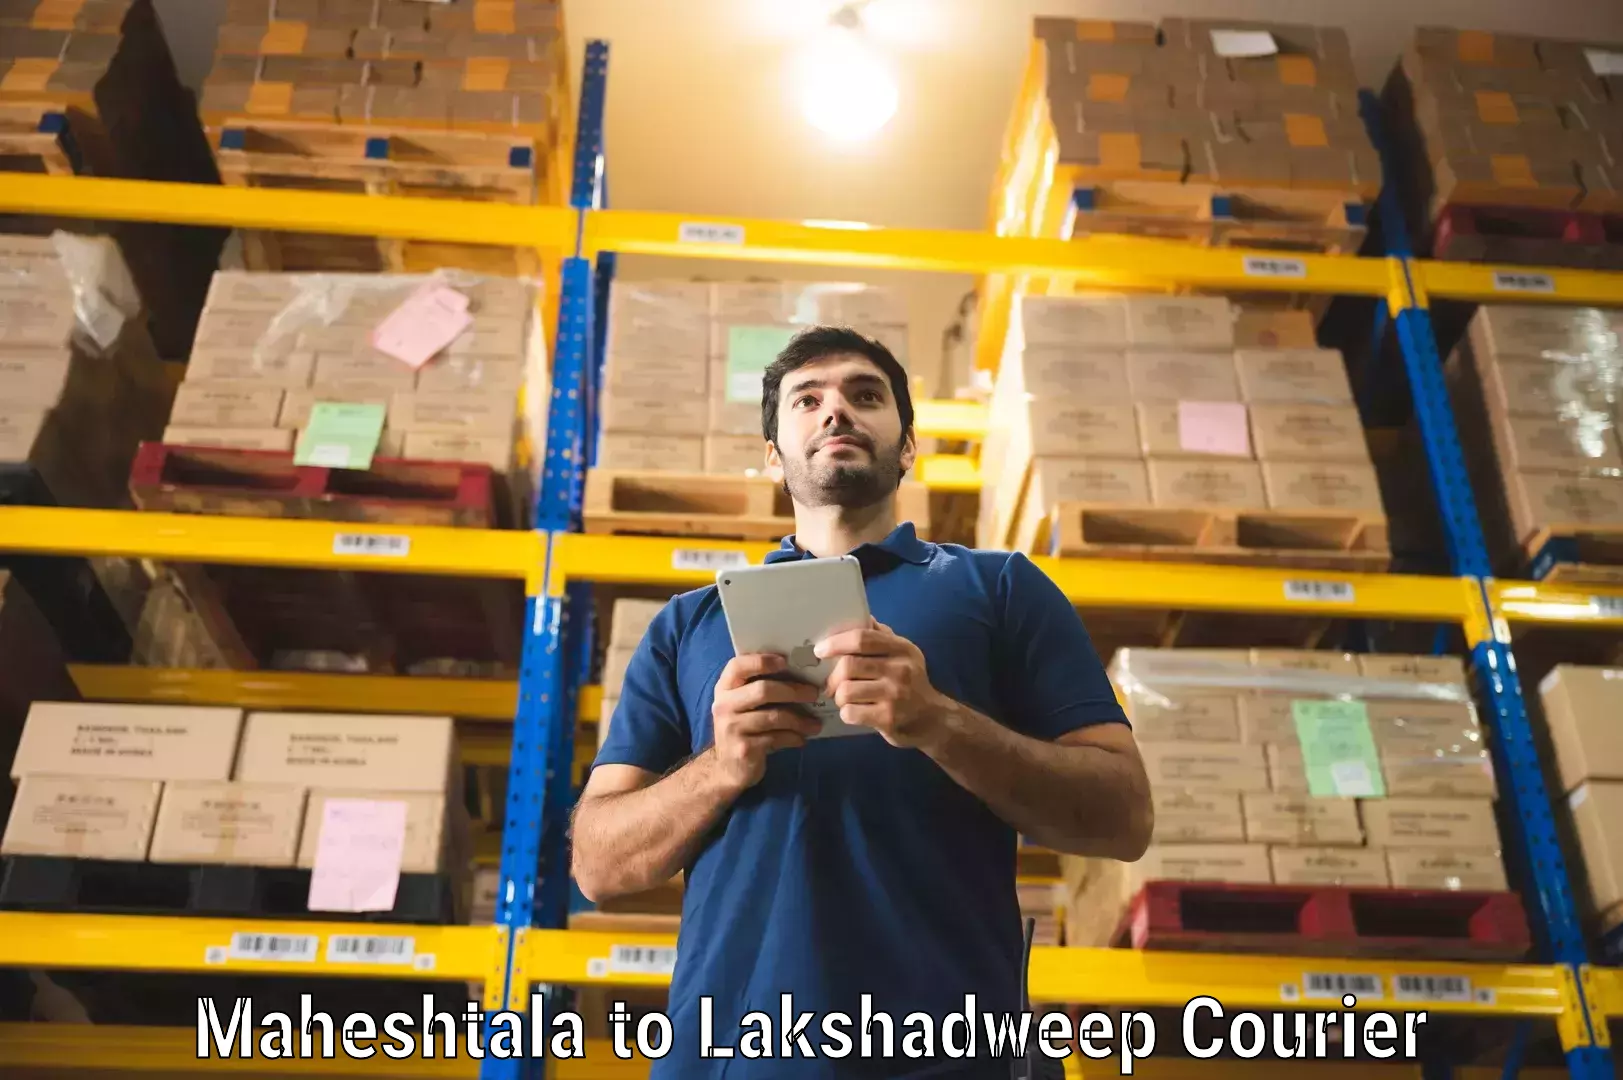 Customer-centric shipping Maheshtala to Lakshadweep